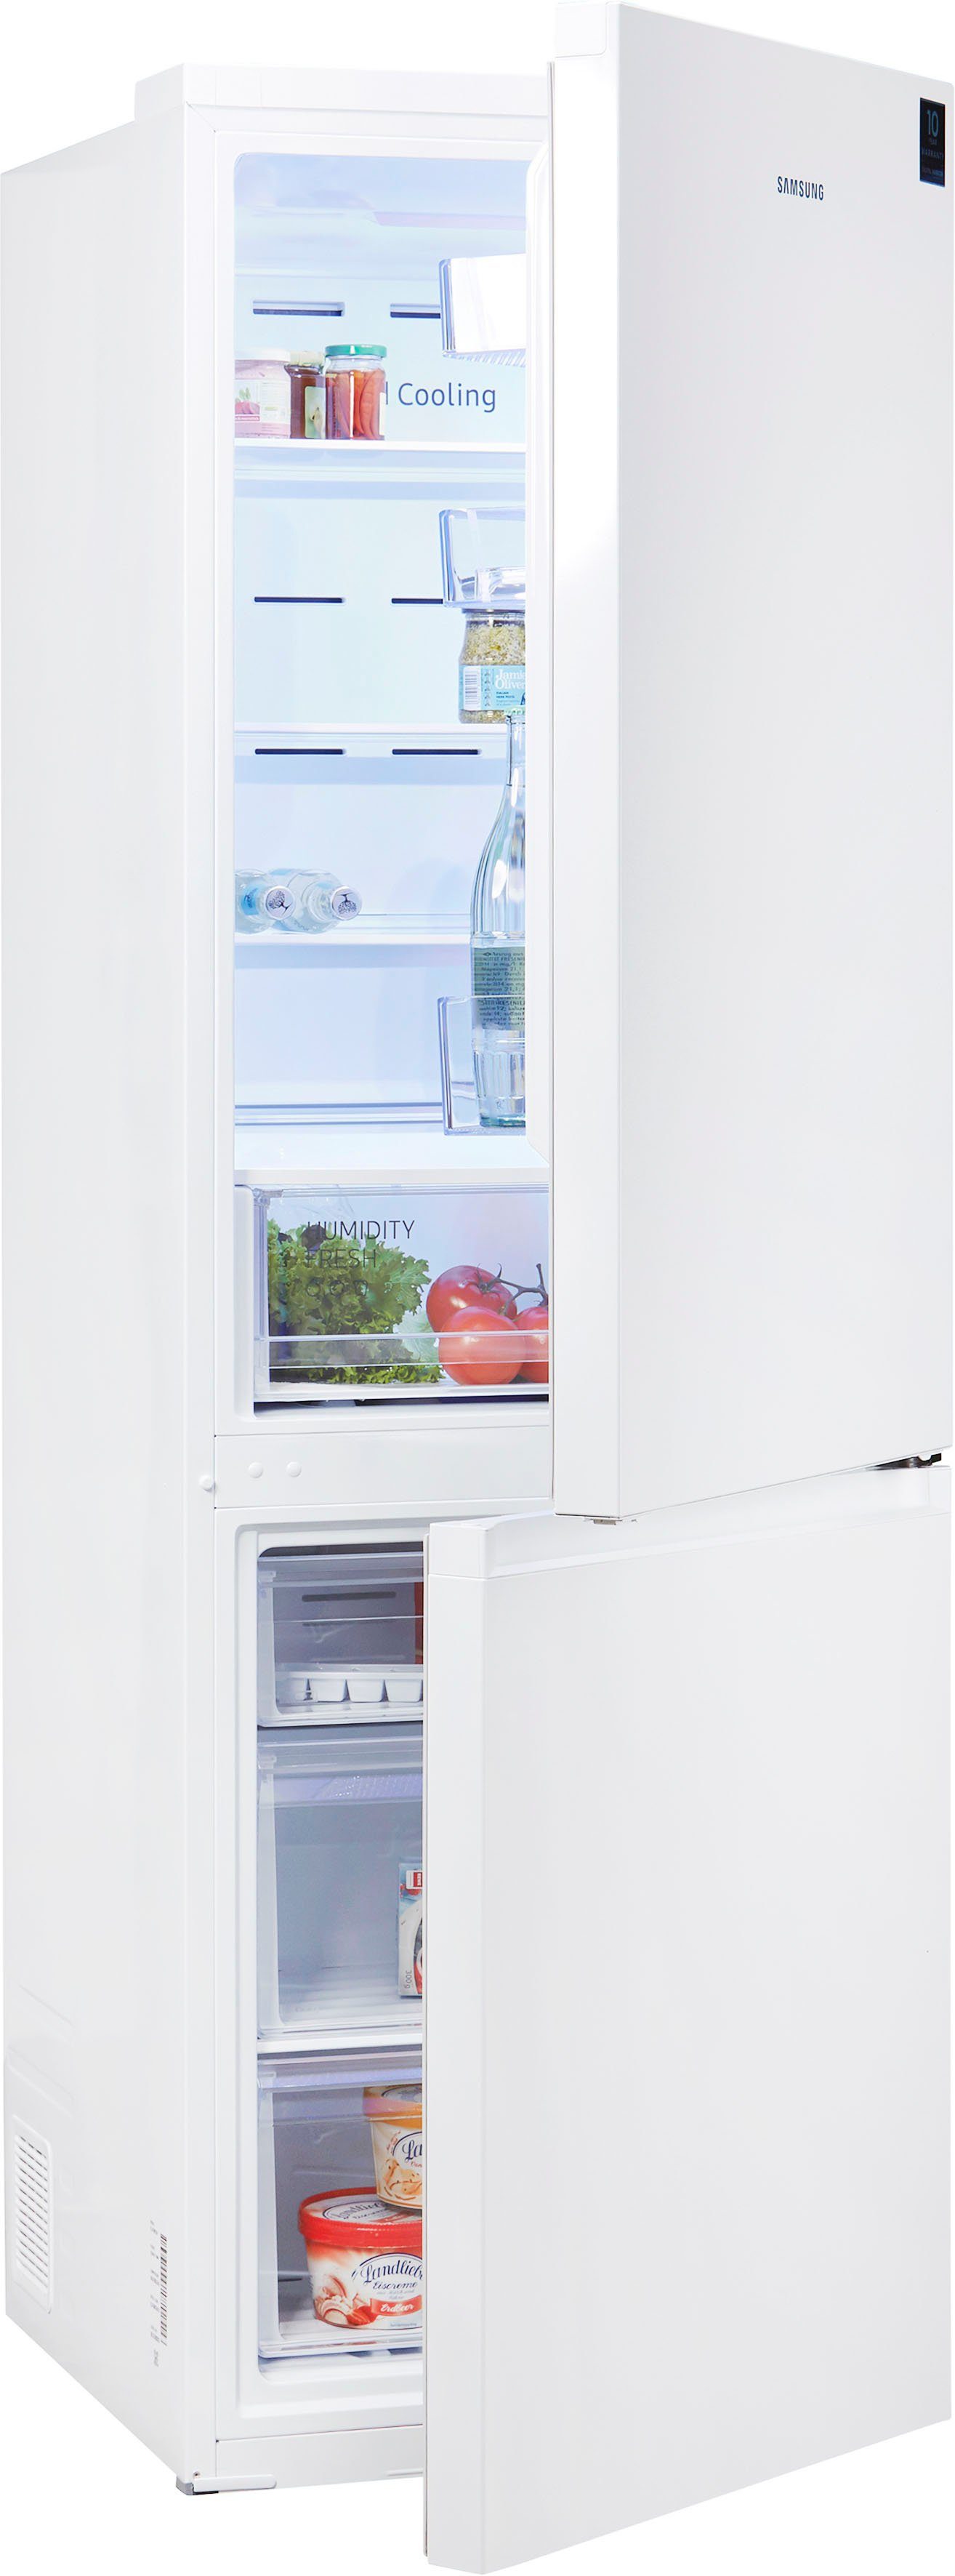 Kühlschrank weiß online kaufen | OTTO